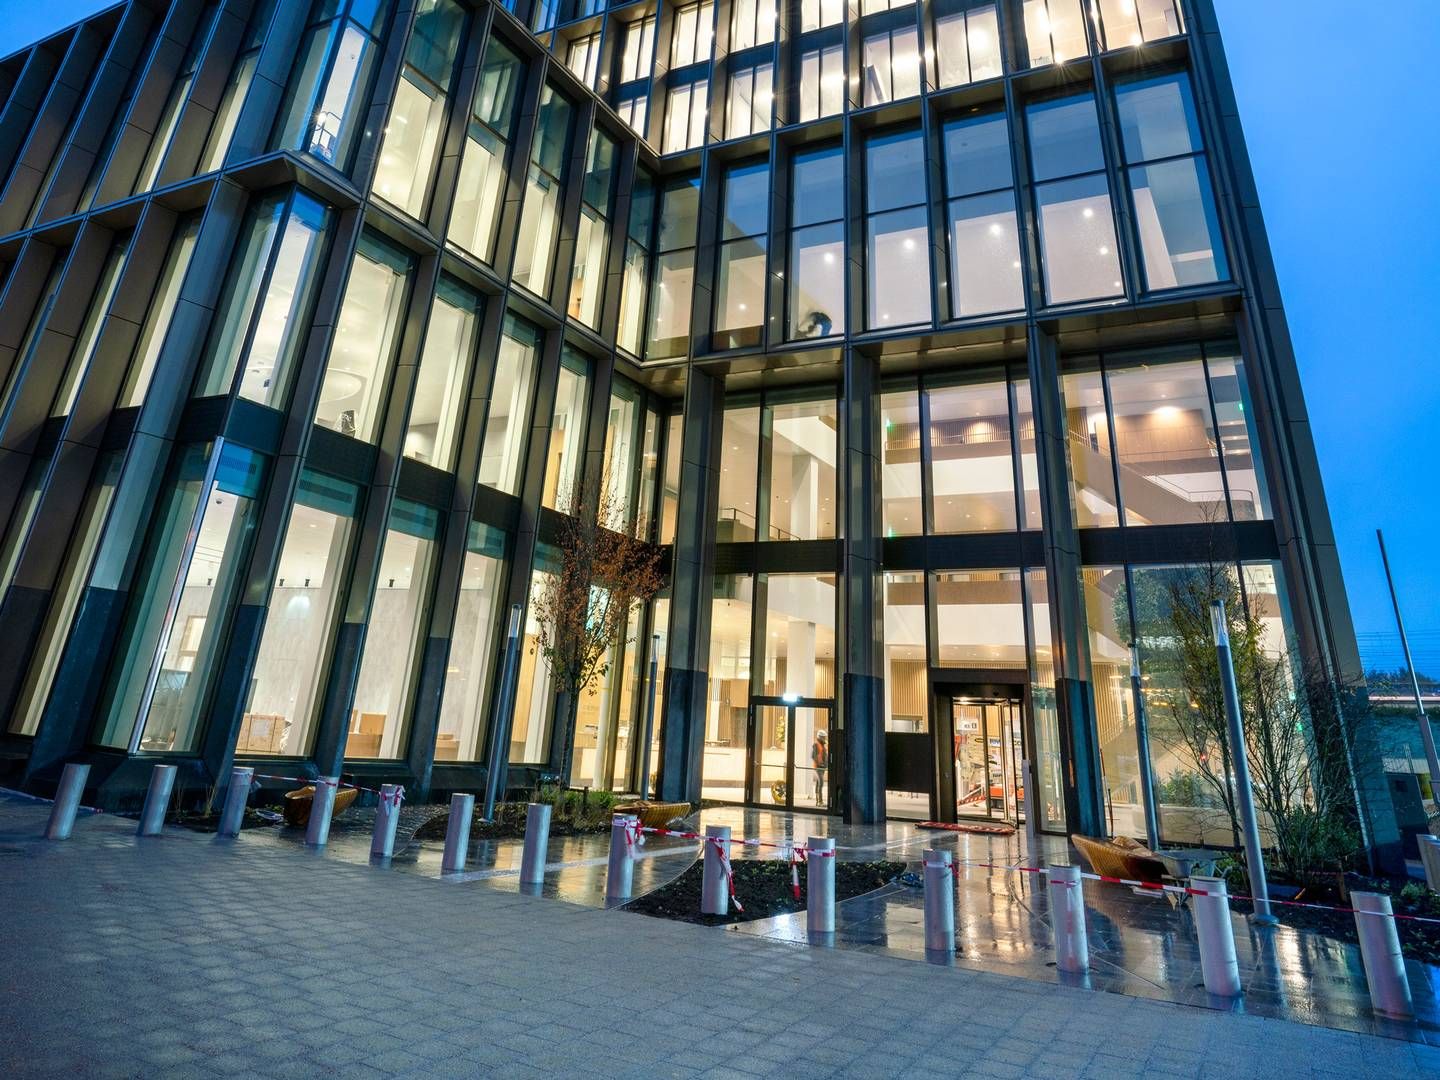 EMA's hovedkvarter i Amsterdam. | Photo: Rob Acket/ema